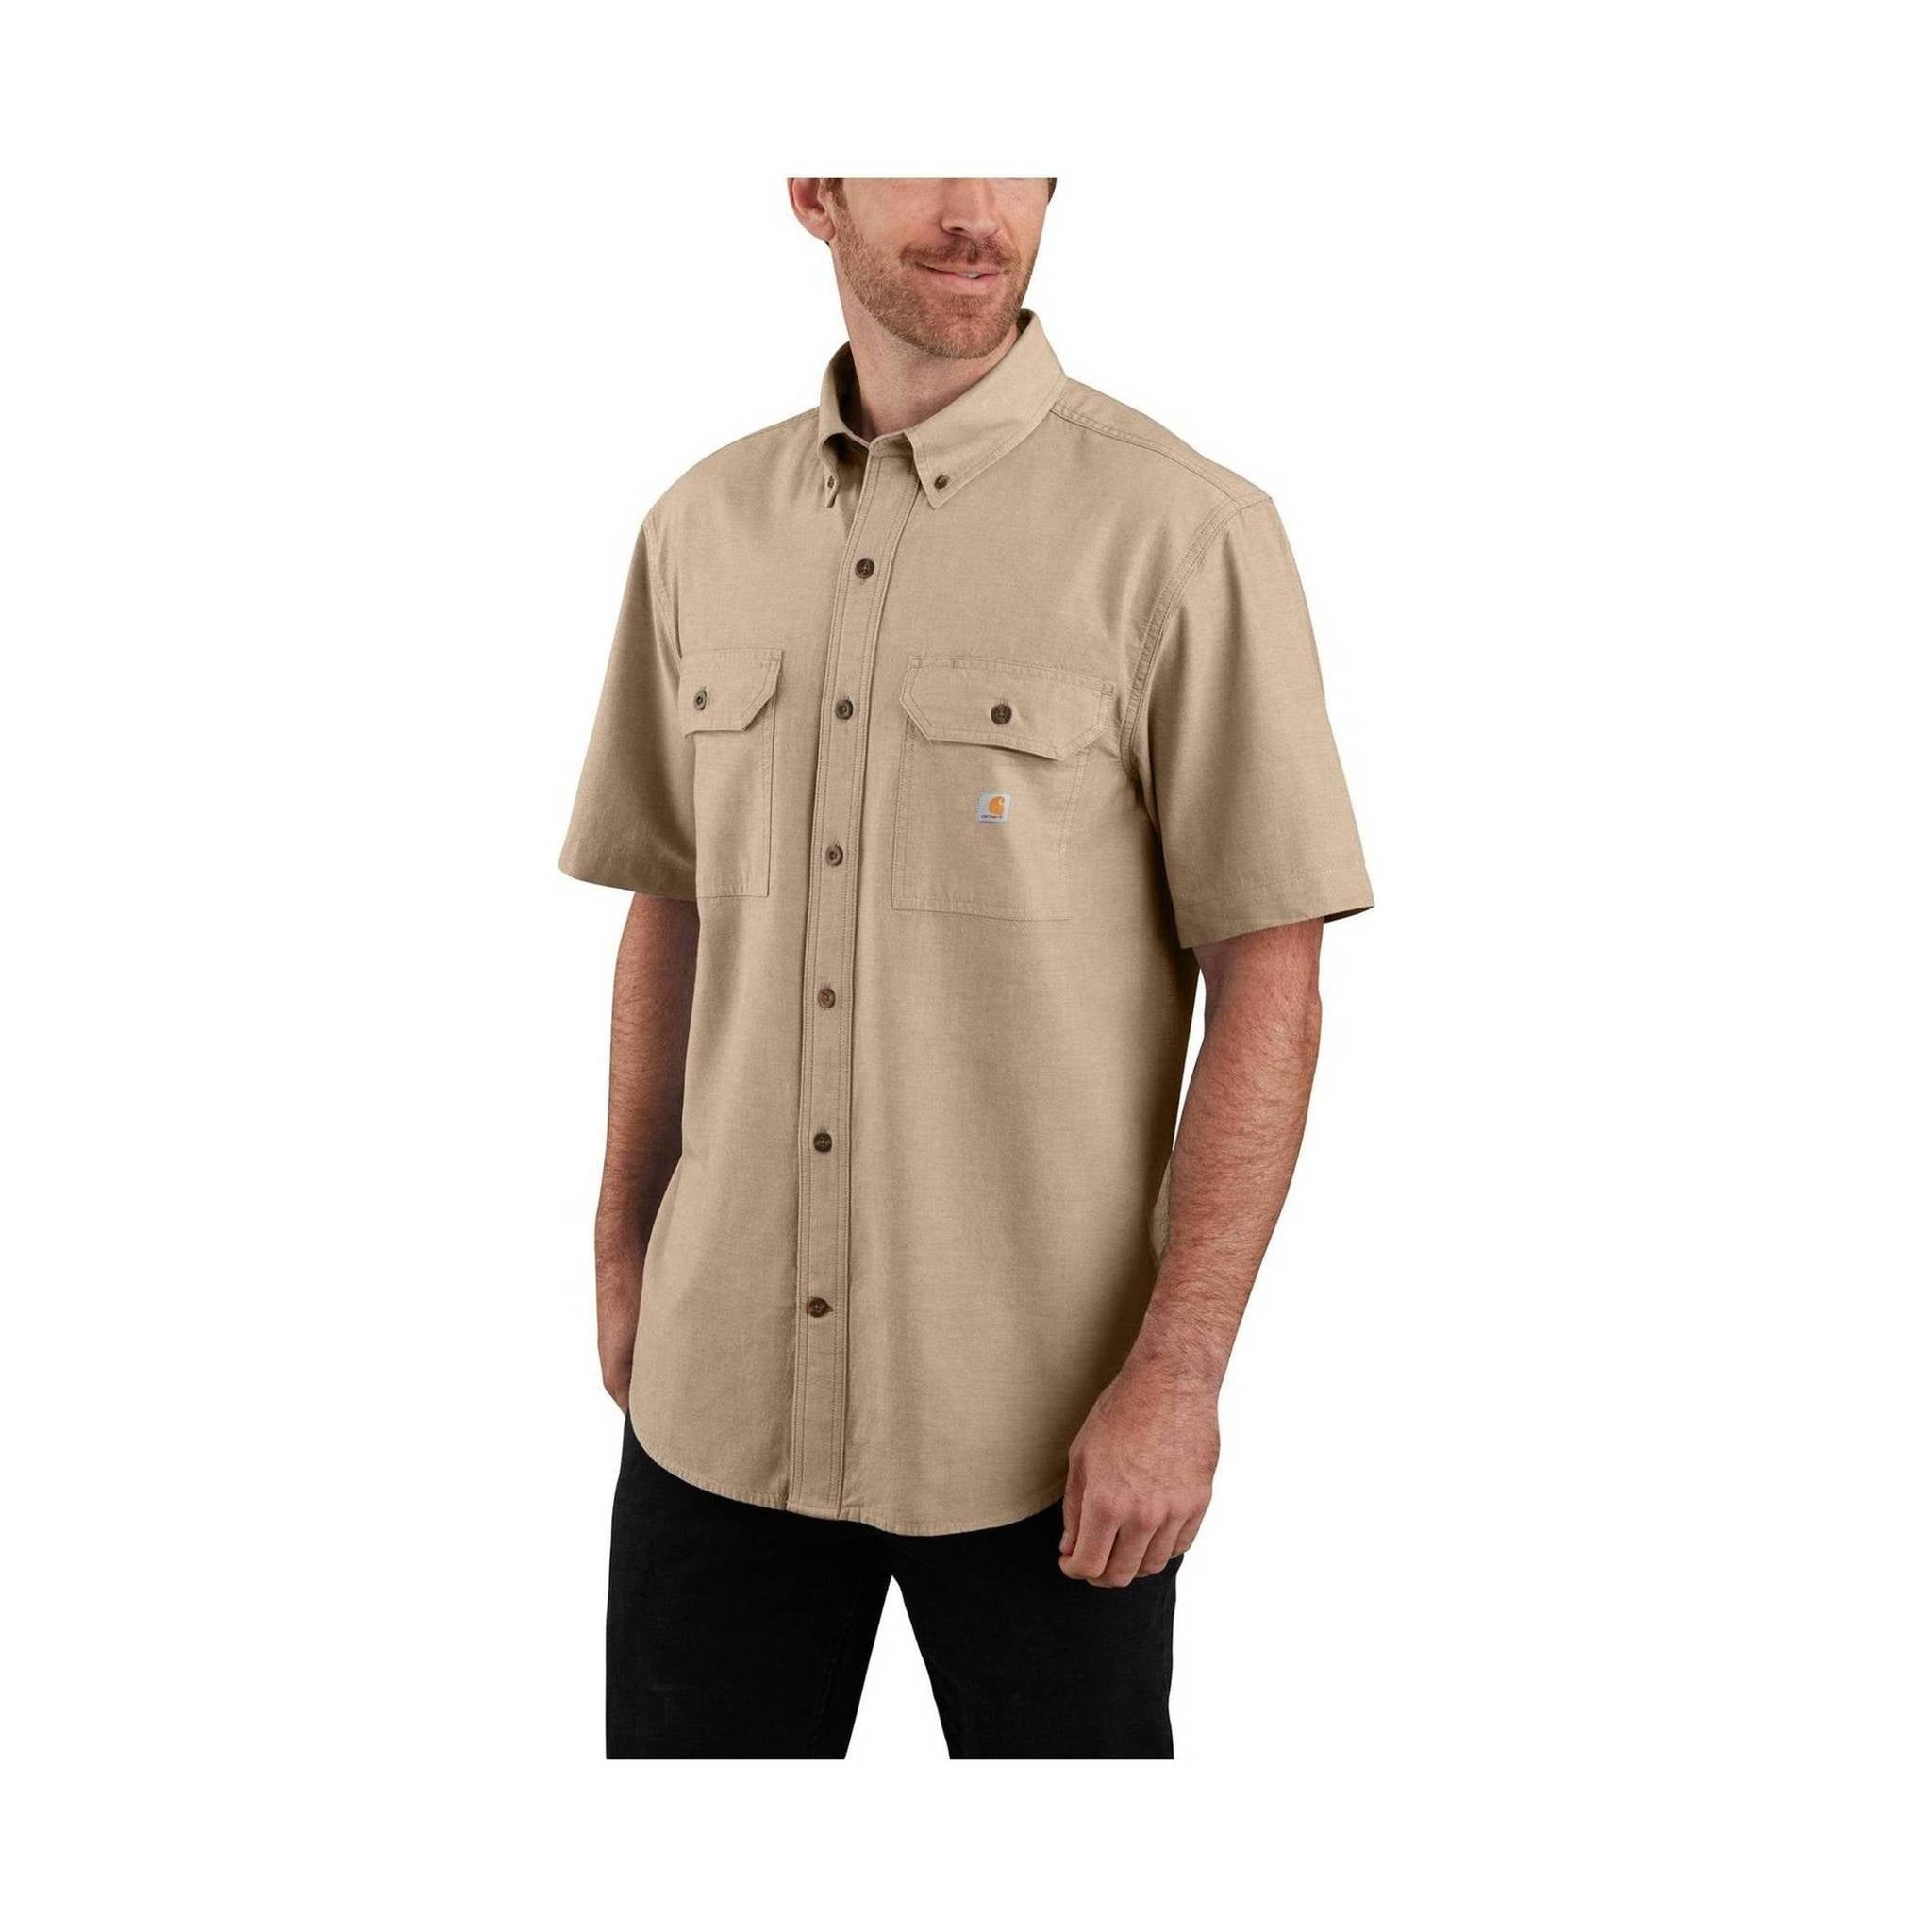 Carhartt Men's Original Fit Midweight Short-Sleeve Button-Front Shirt - Dark Tan Chambray,XL